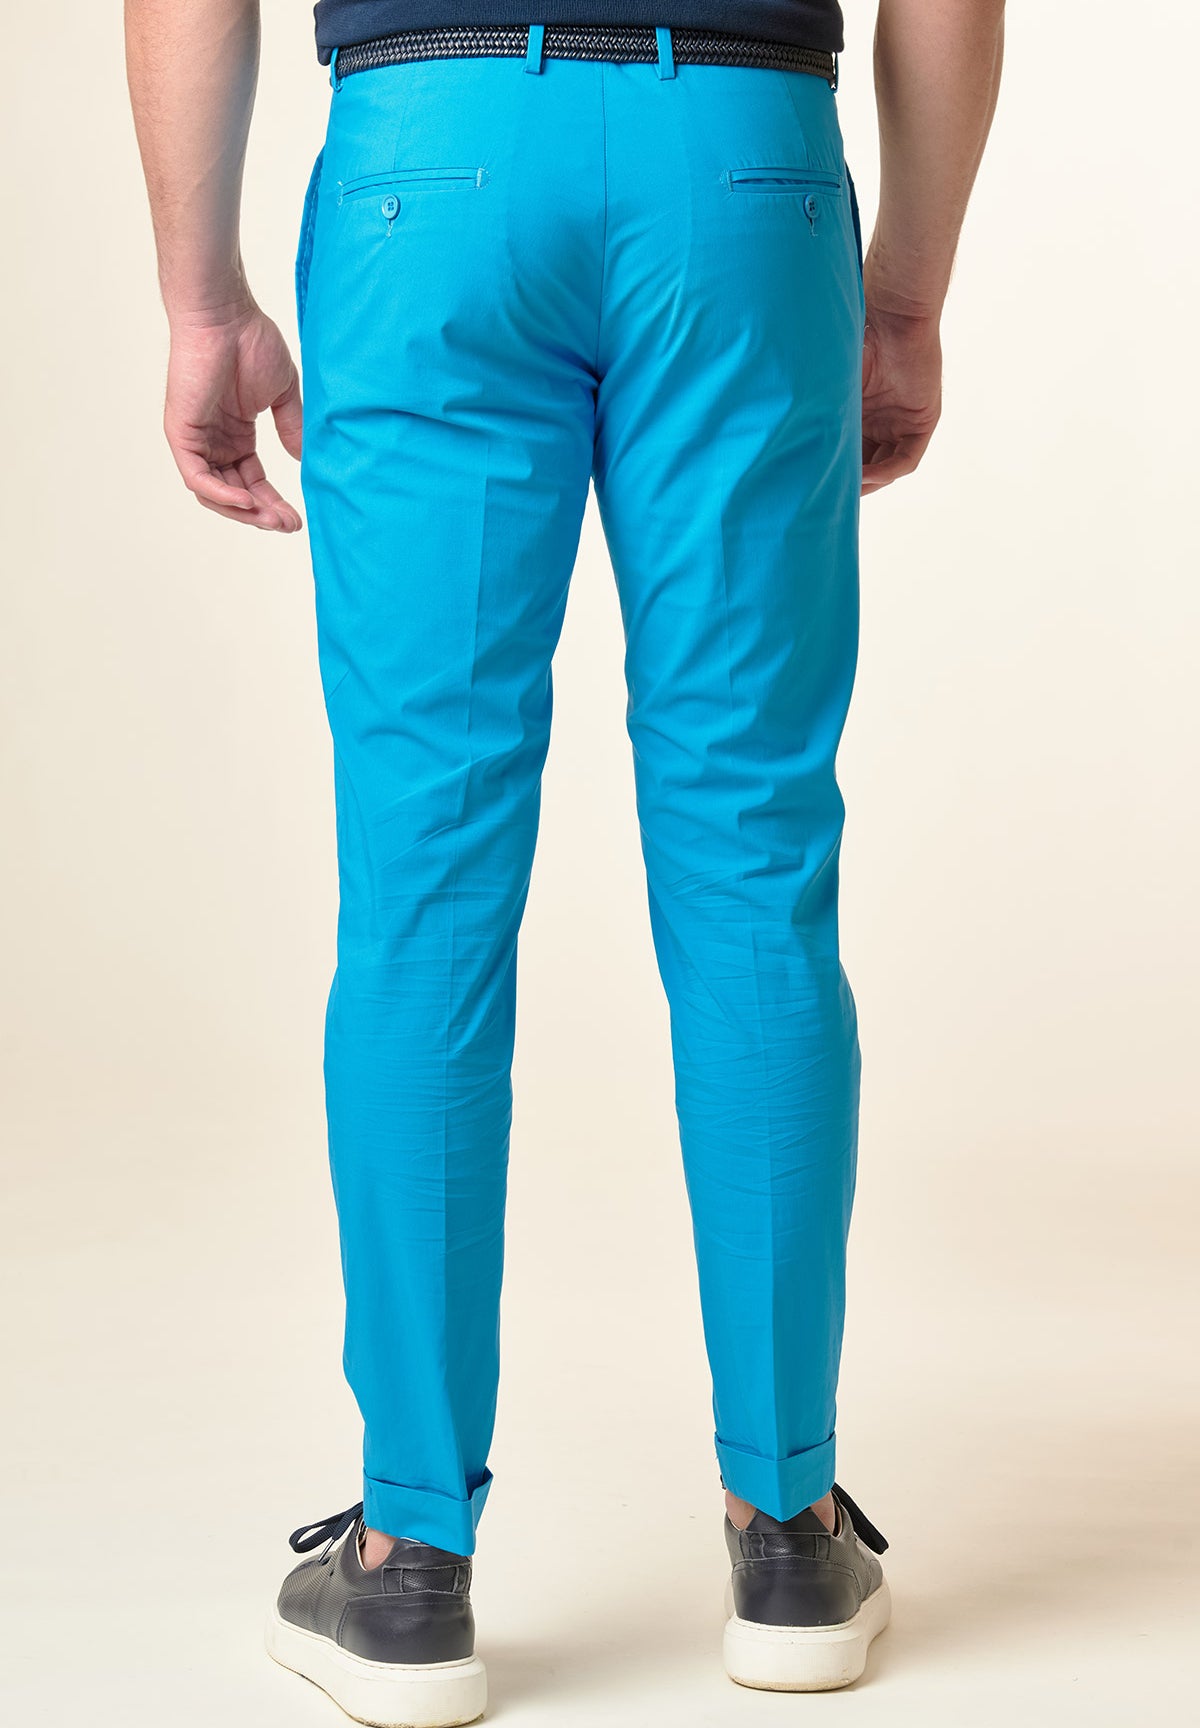 Pantalone turchese cotone tecnico risvolto slim fit